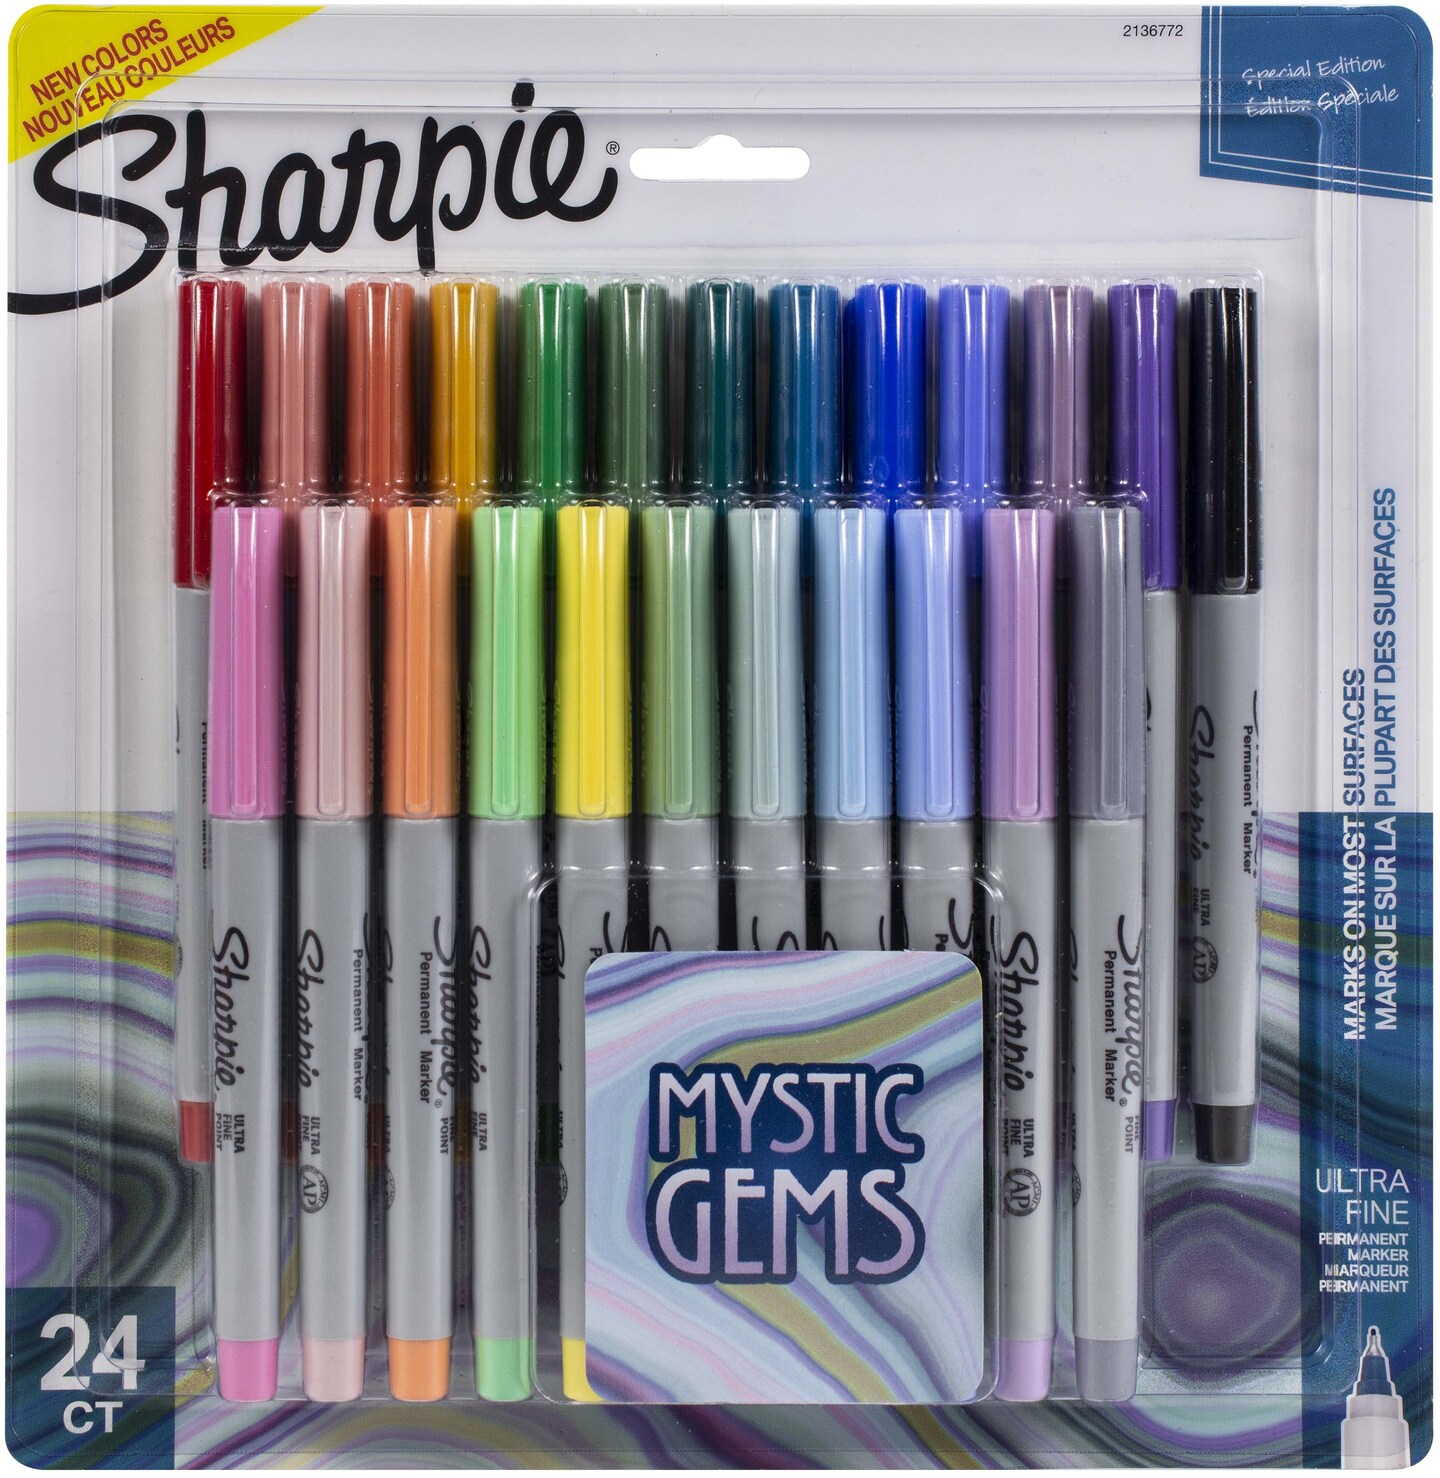 Sharpie Fine Point Permanent Markers - Mystic Gem Colors, Set of